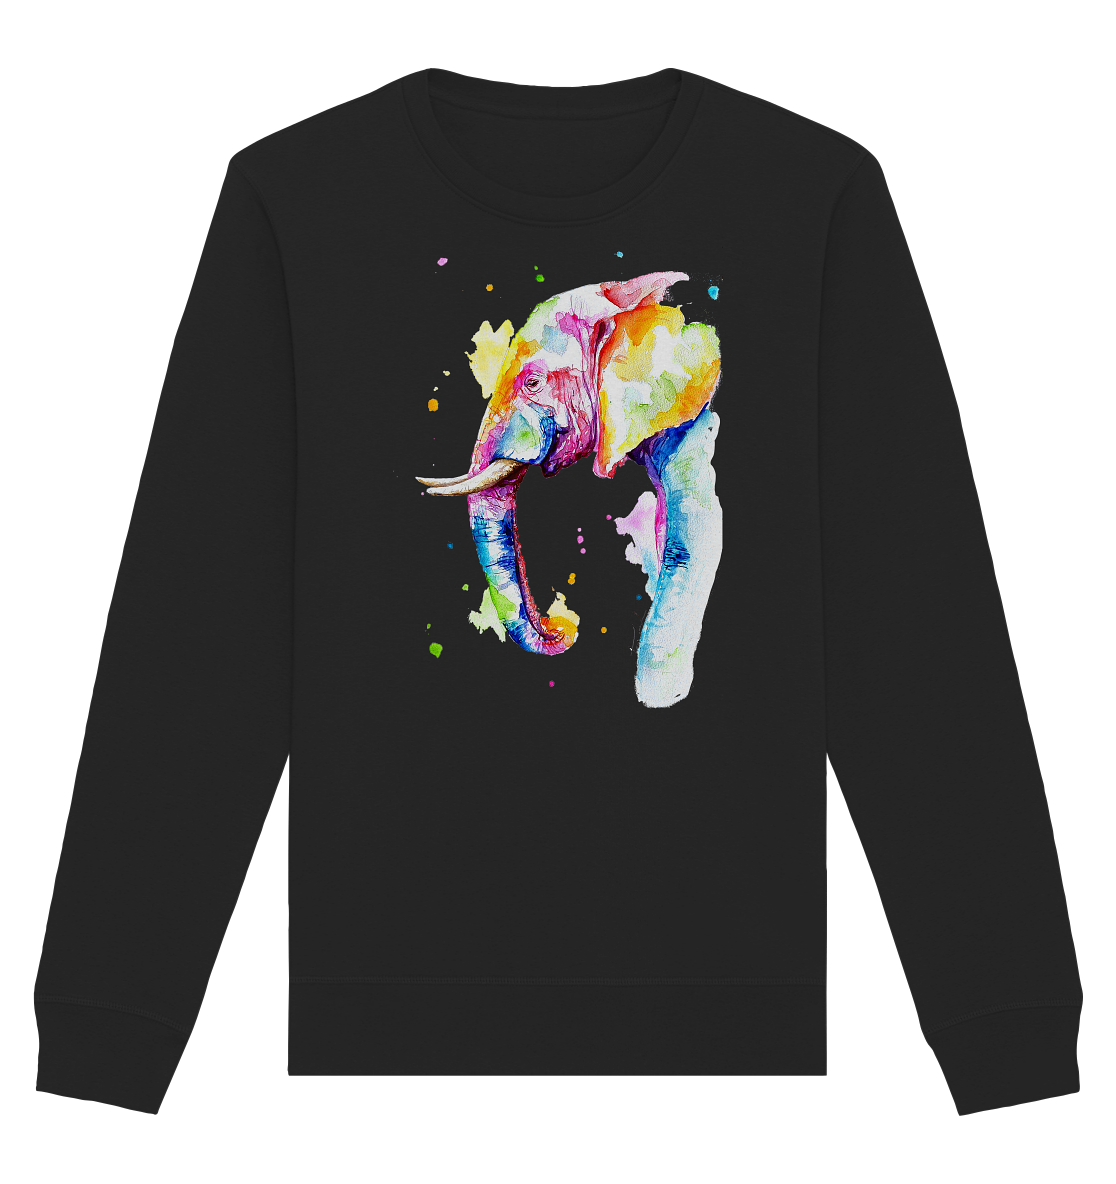 Bunter Elefant - Organic Basic Unisex Sweatshirt